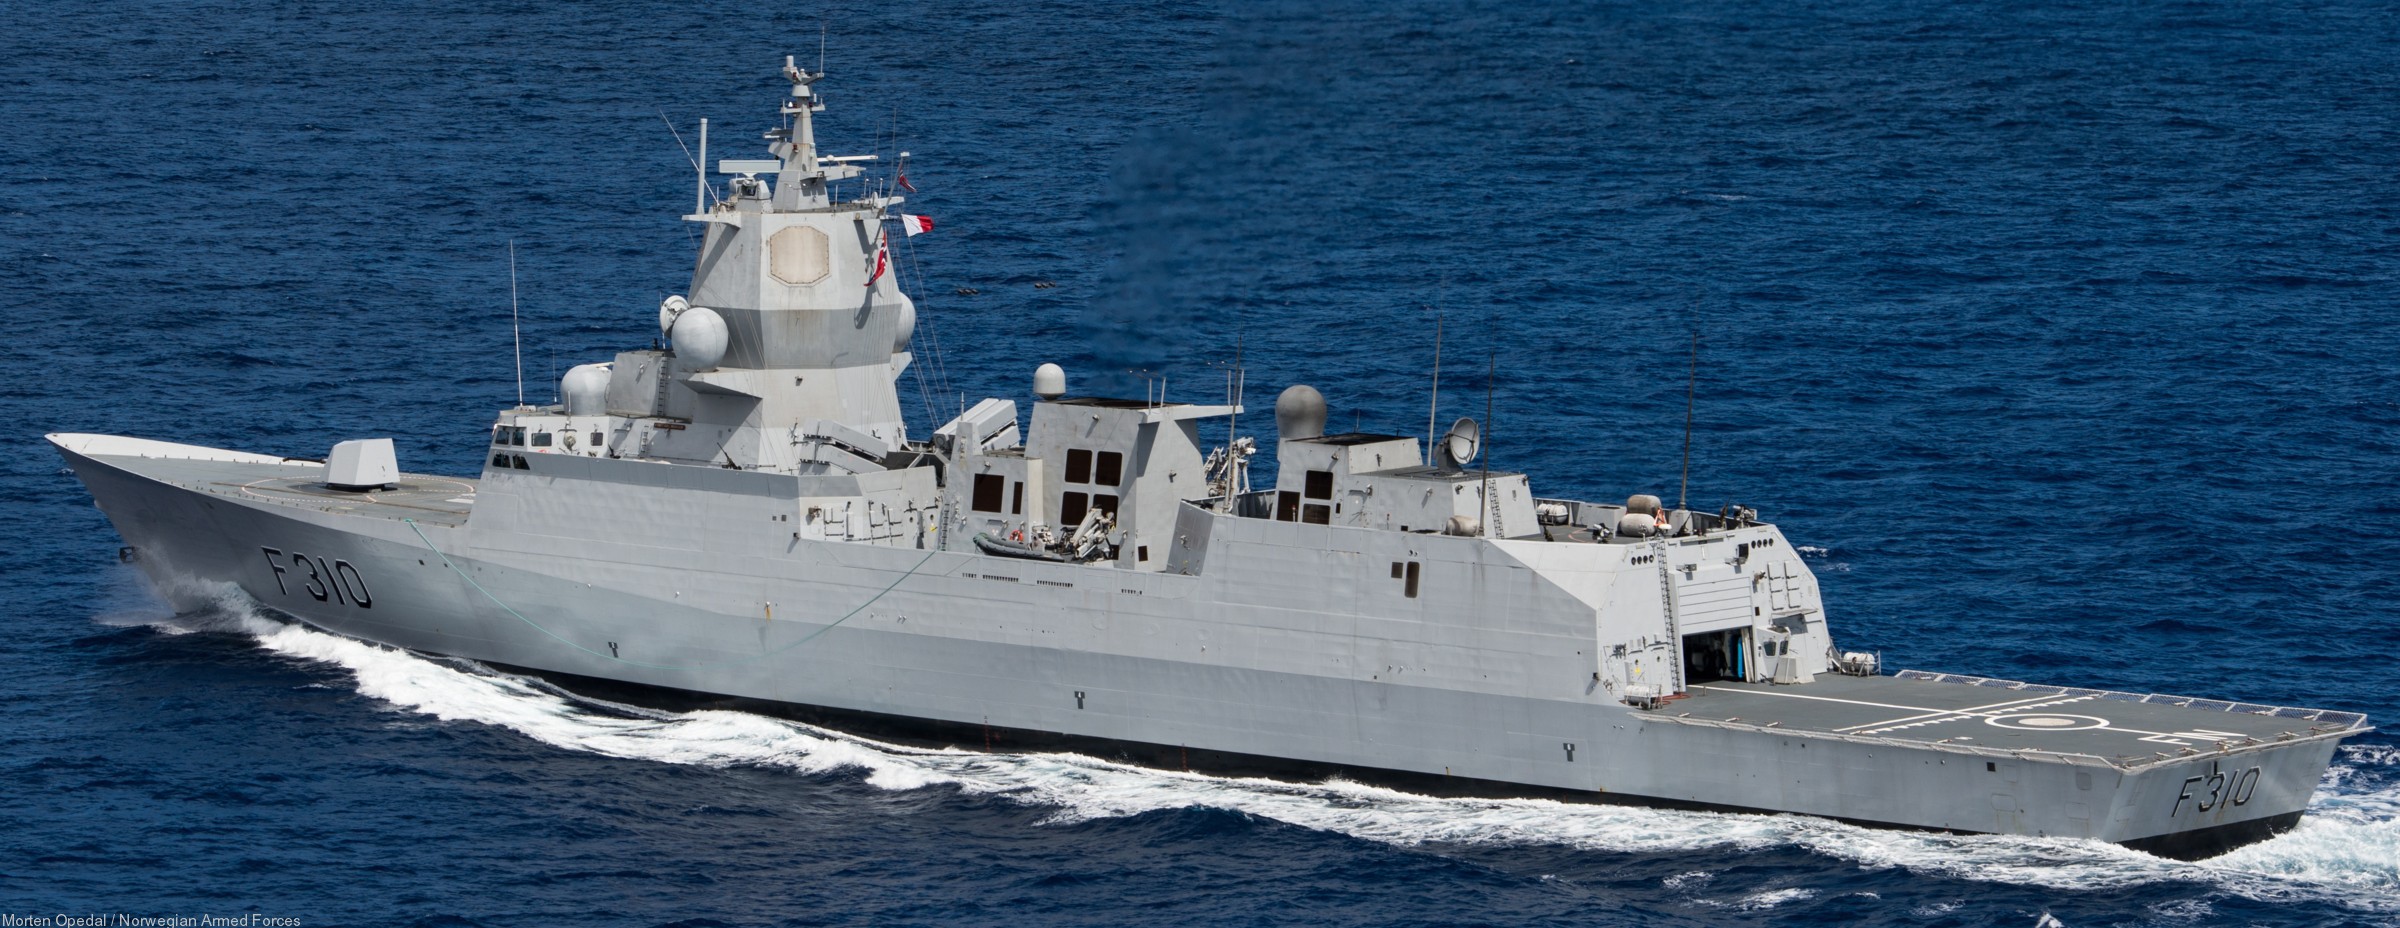 f-310 fridtjof nansen hnoms knm frigate royal norwegian navy sjoforsvaret 02a